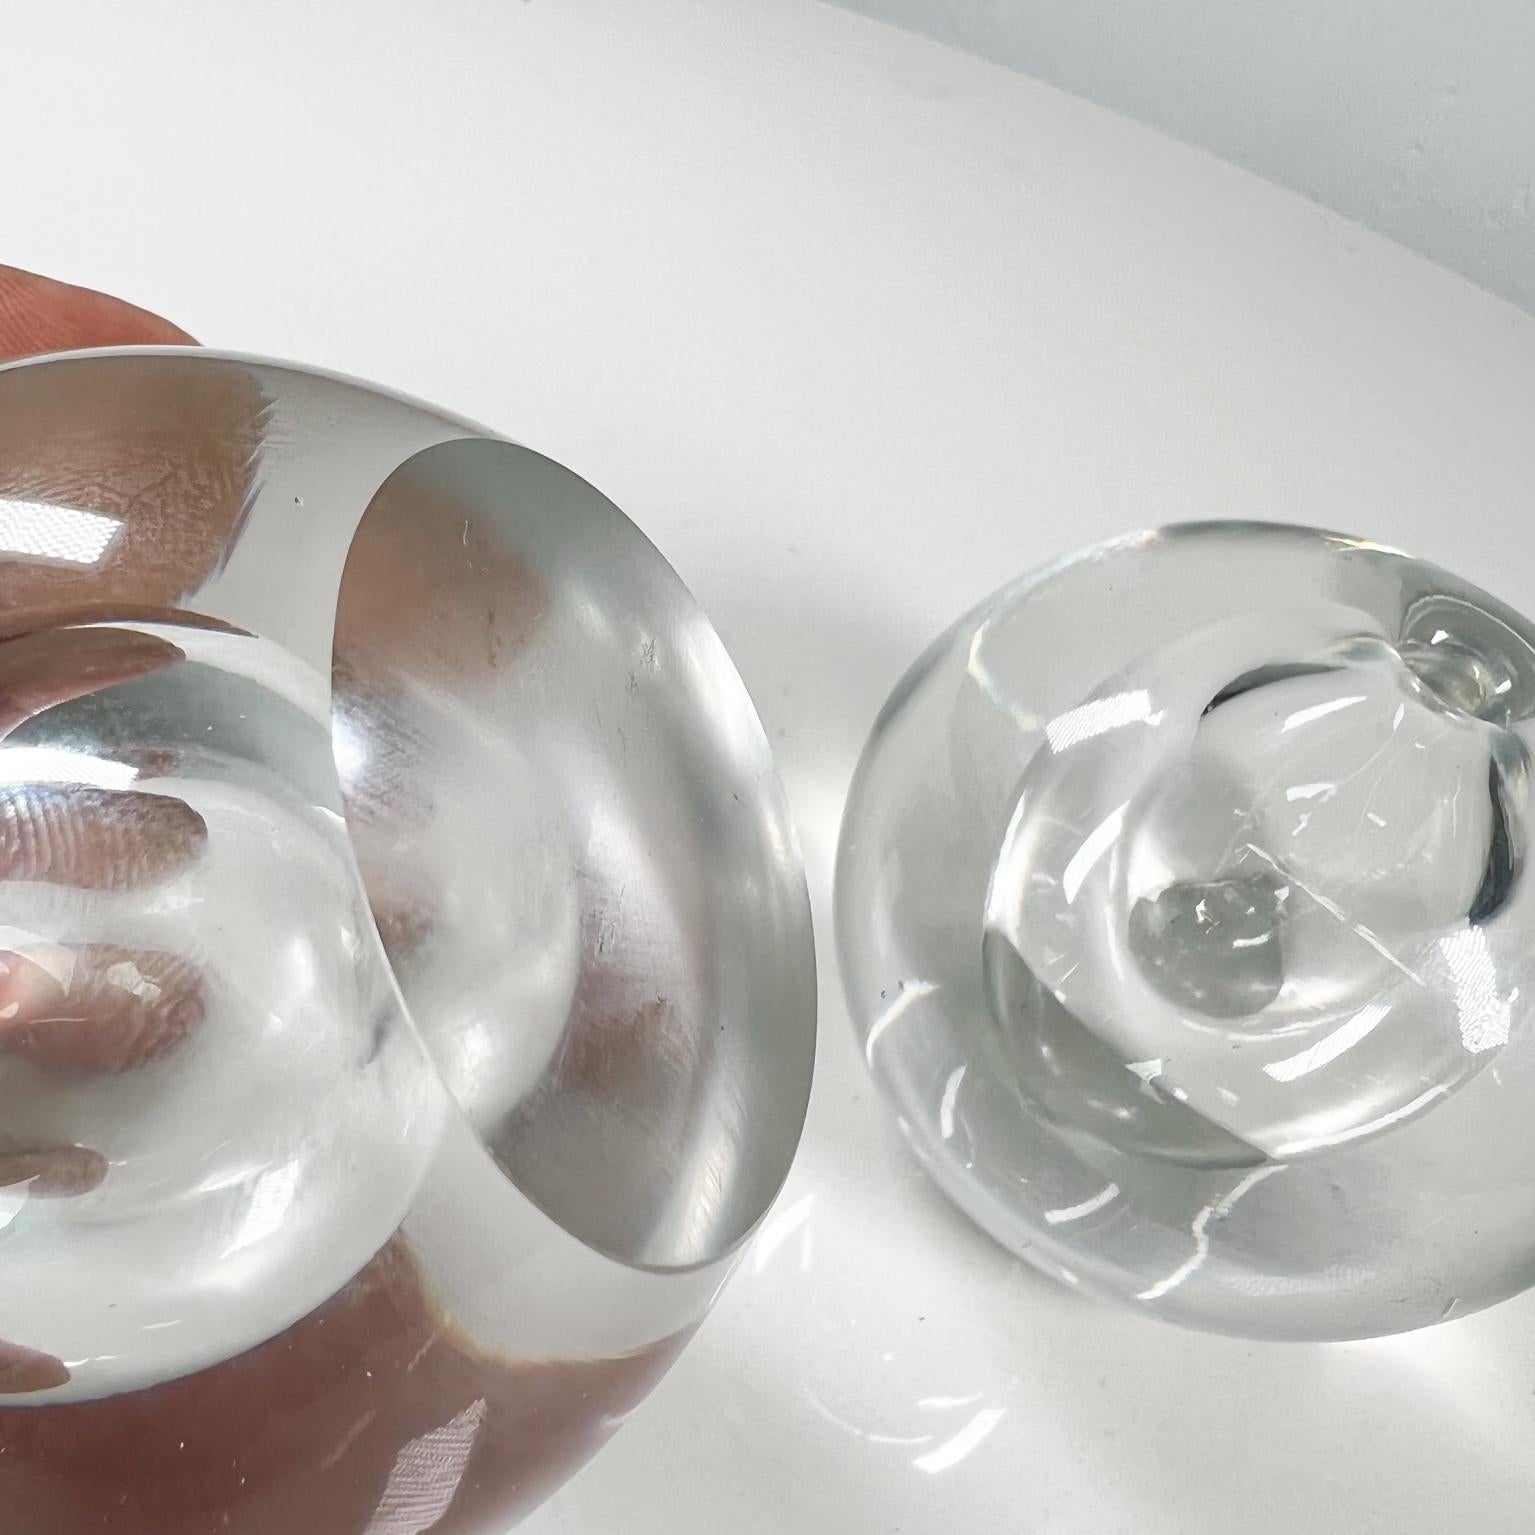 1960s Modern Orb Globe Art Glass Vase Pair Style of Rosenthal Studio Line 2